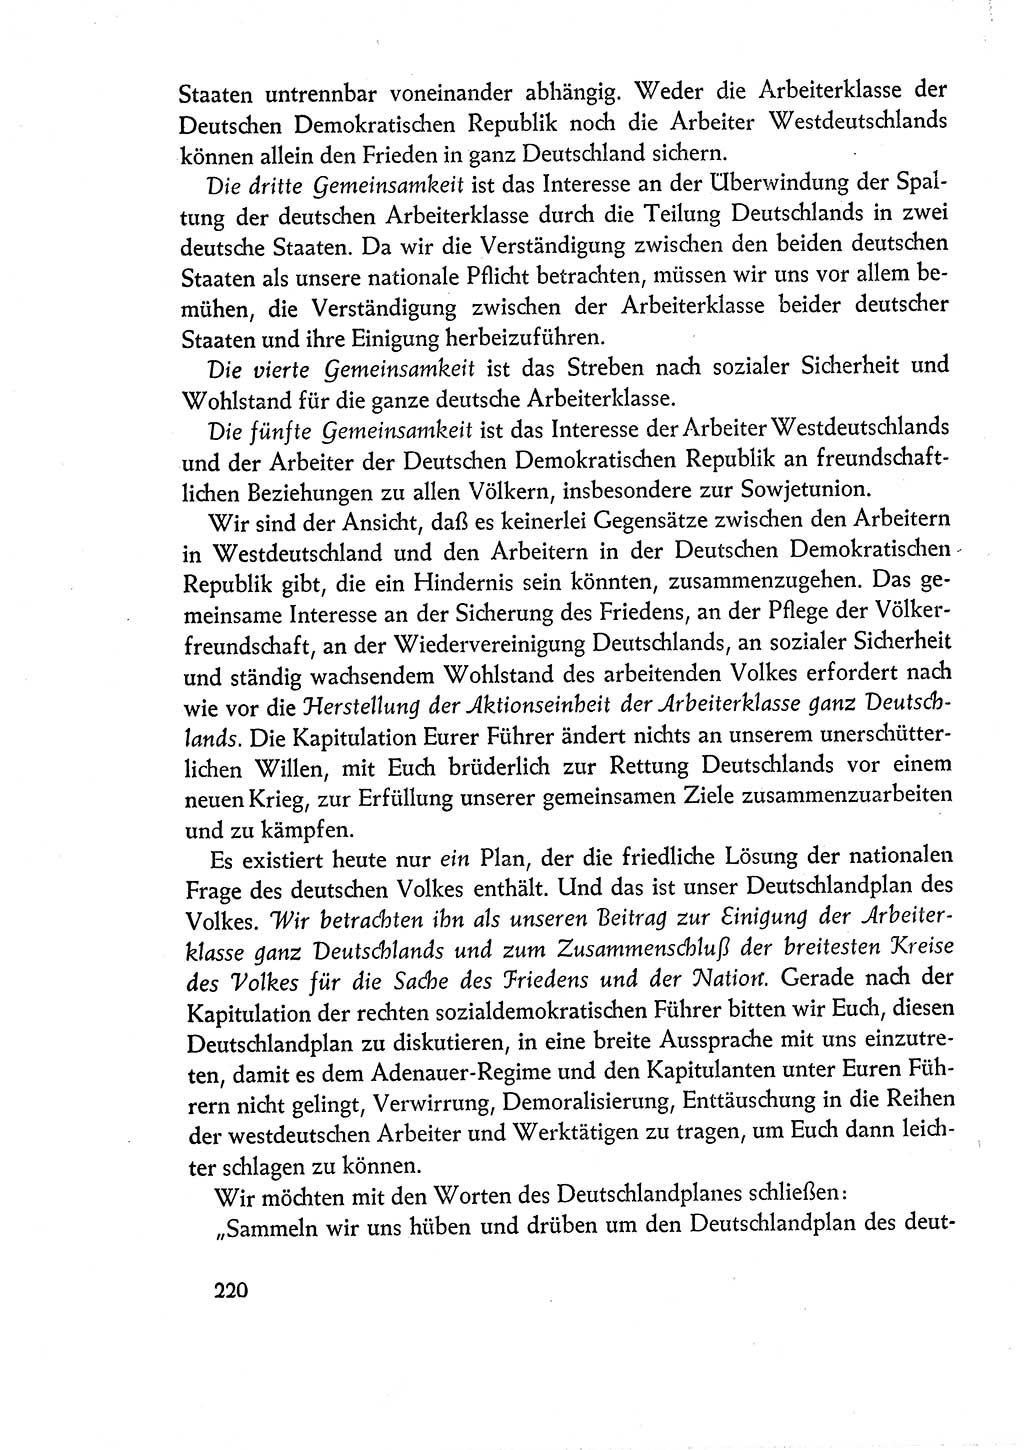 Dokumente der Sozialistischen Einheitspartei Deutschlands (SED) [Deutsche Demokratische Republik (DDR)] 1960-1961, Seite 220 (Dok. SED DDR 1960-1961, S. 220)